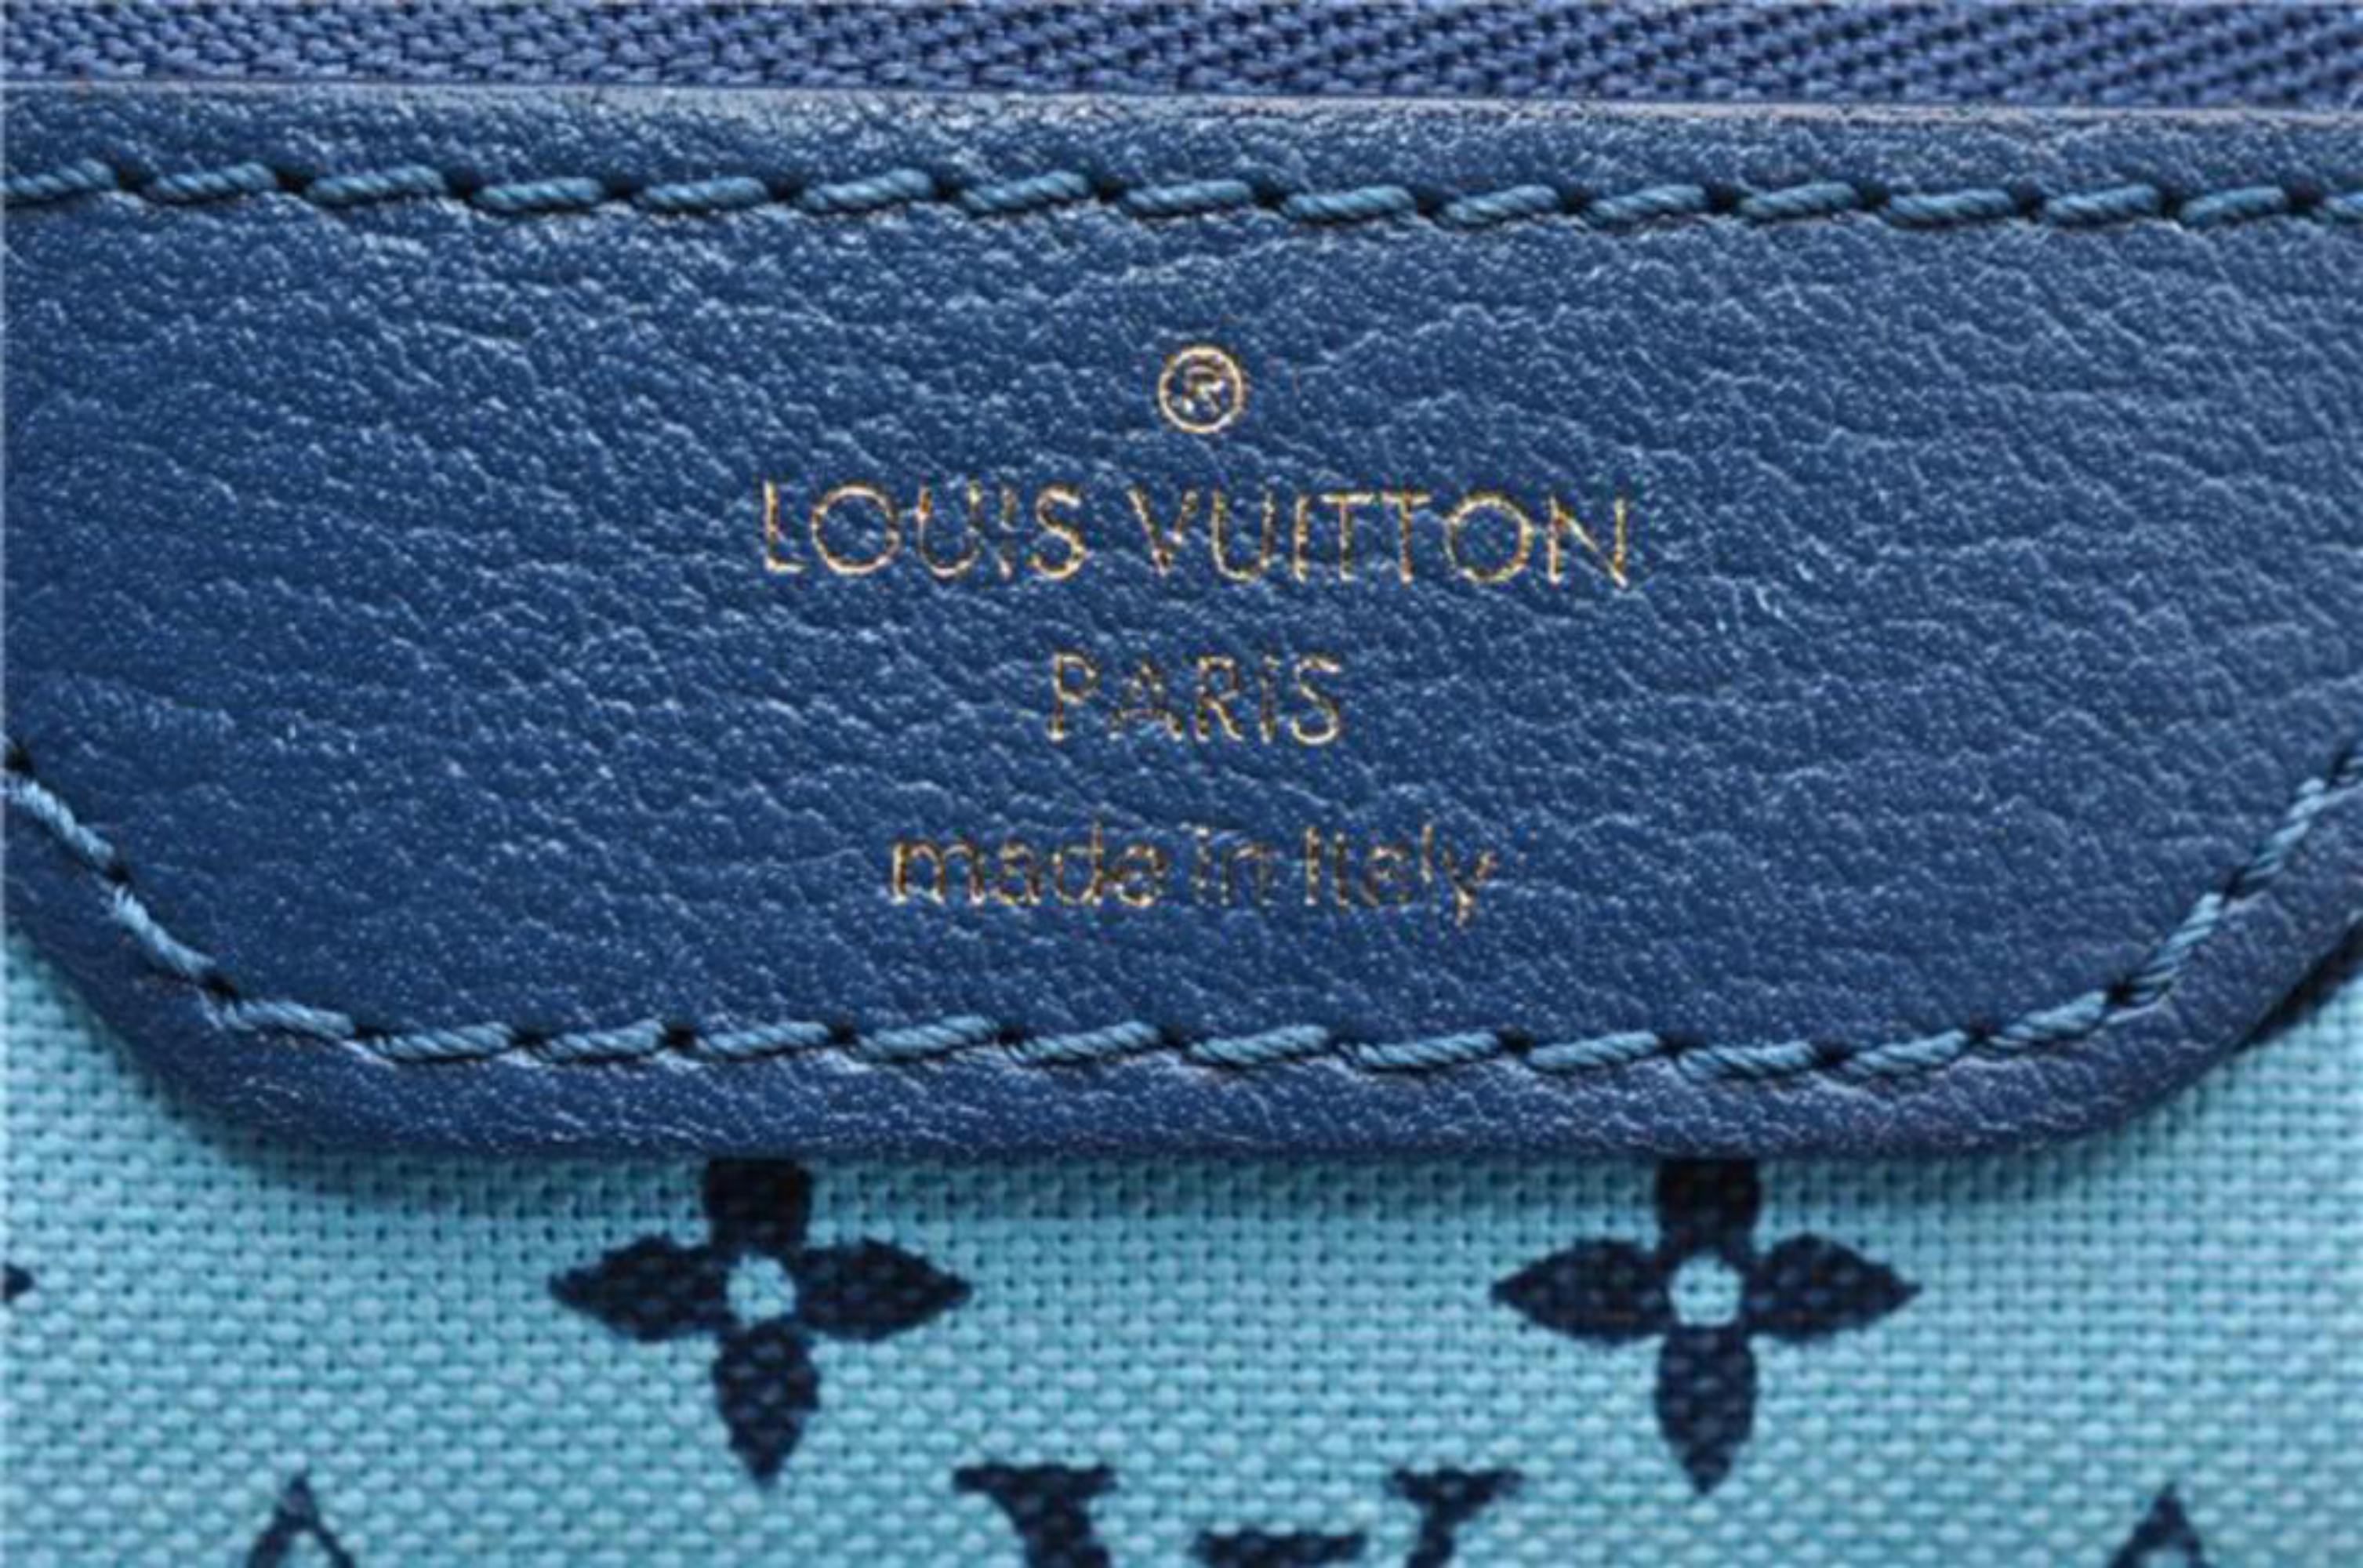 Beige Louis Vuitton Cabas Ailleurs Escale Pm Tote 866948 Blue Canvas Shoulder Bag For Sale